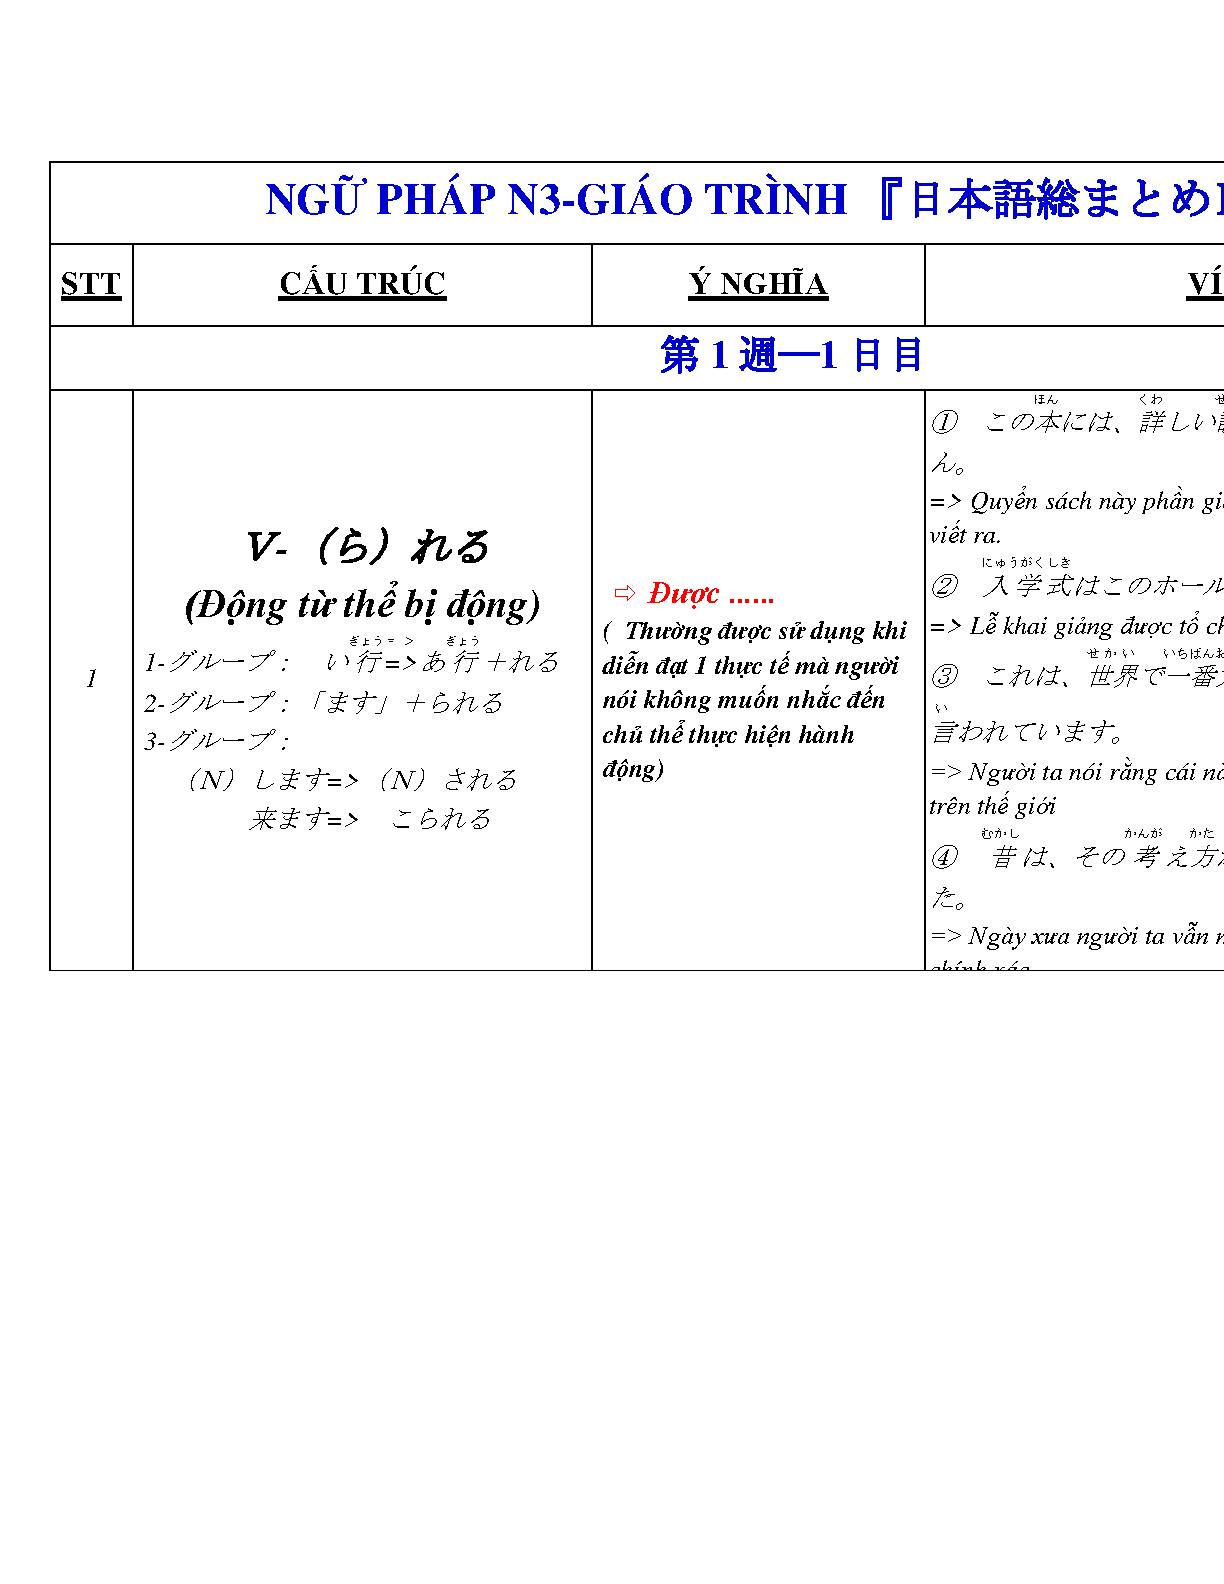 Tổng hợp ngữ pháp N3 đầy đủ nhất - Ngữ pháp Tiếng Nhật